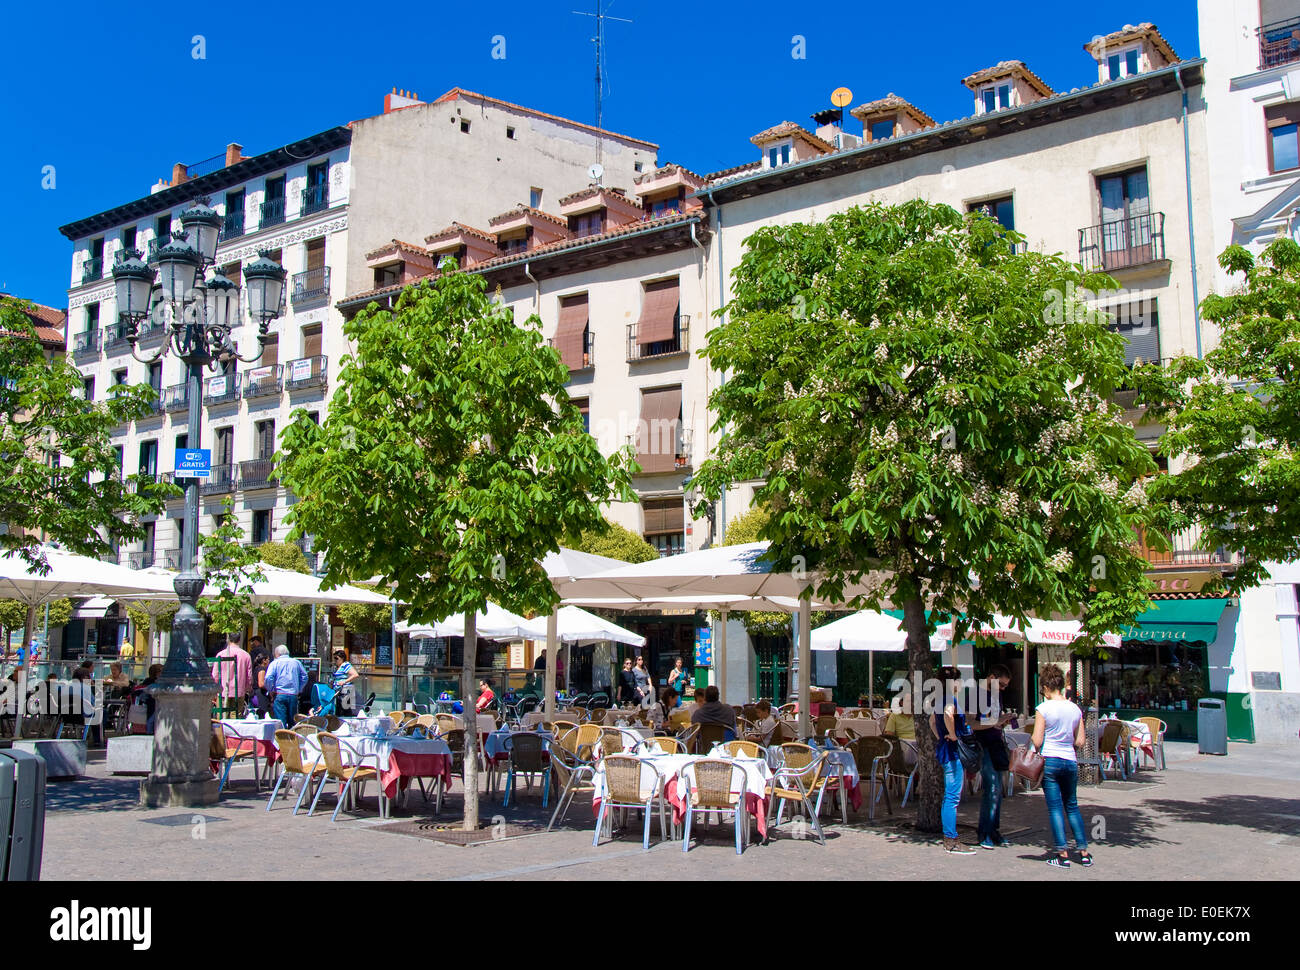 Plaza Santa Ana, Madrid, Spain Stock Photo